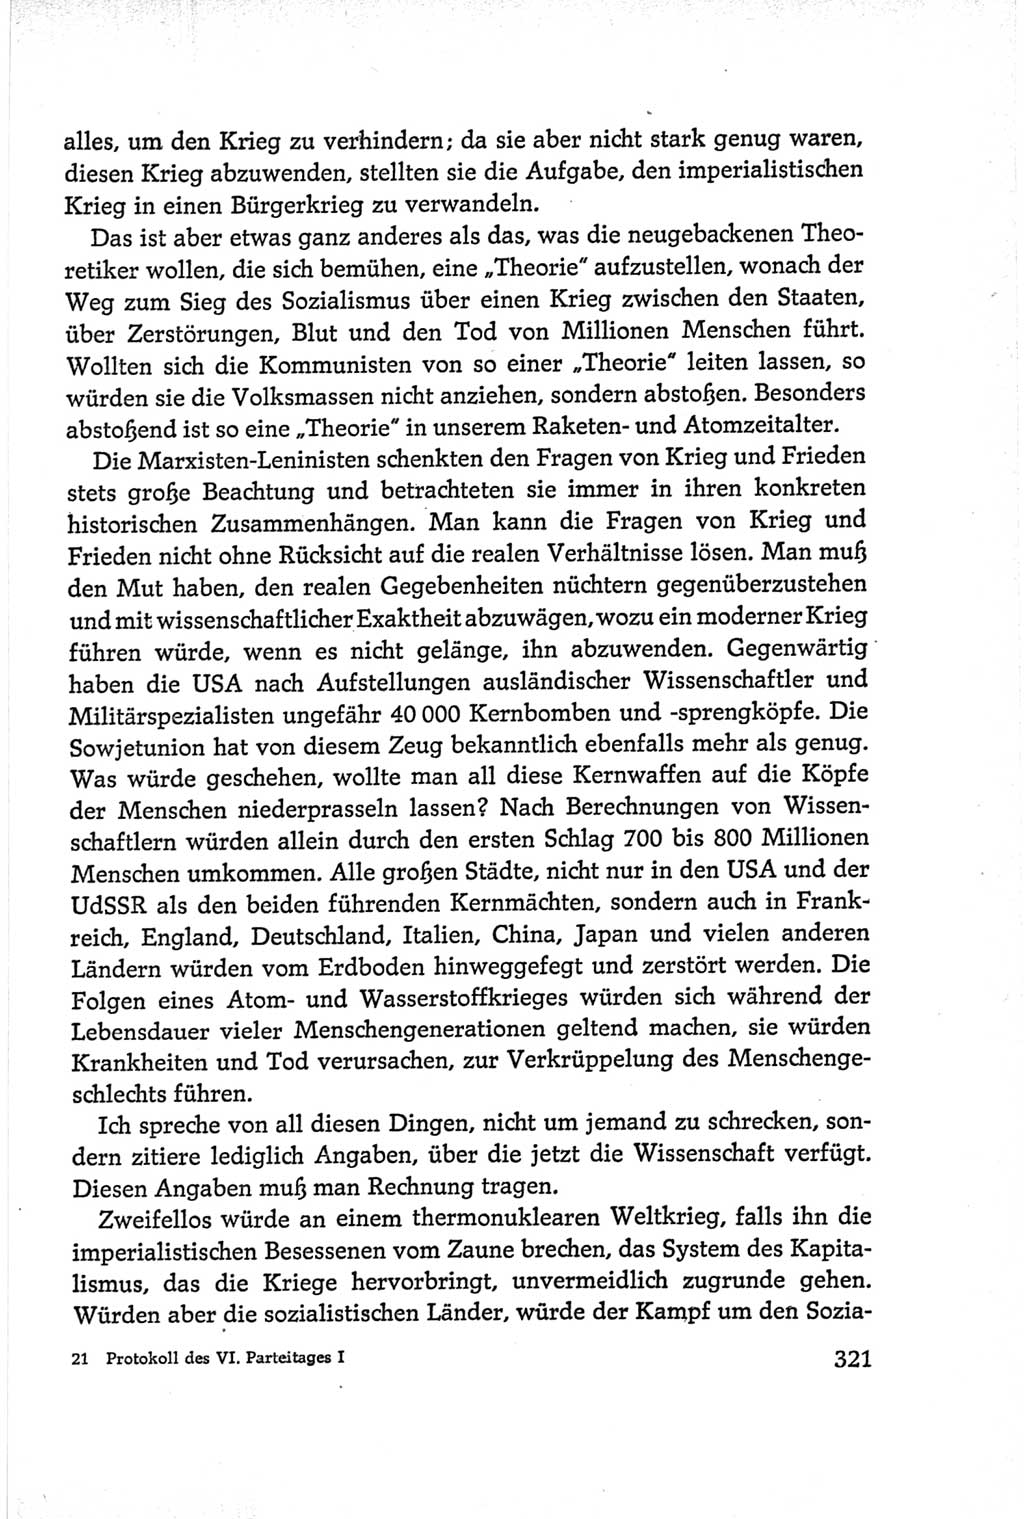 Protokoll der Verhandlungen des Ⅵ. Parteitages der Sozialistischen Einheitspartei Deutschlands (SED) [Deutsche Demokratische Republik (DDR)] 1963, Band Ⅰ, Seite 321 (Prot. Verh. Ⅵ. PT SED DDR 1963, Bd. Ⅰ, S. 321)